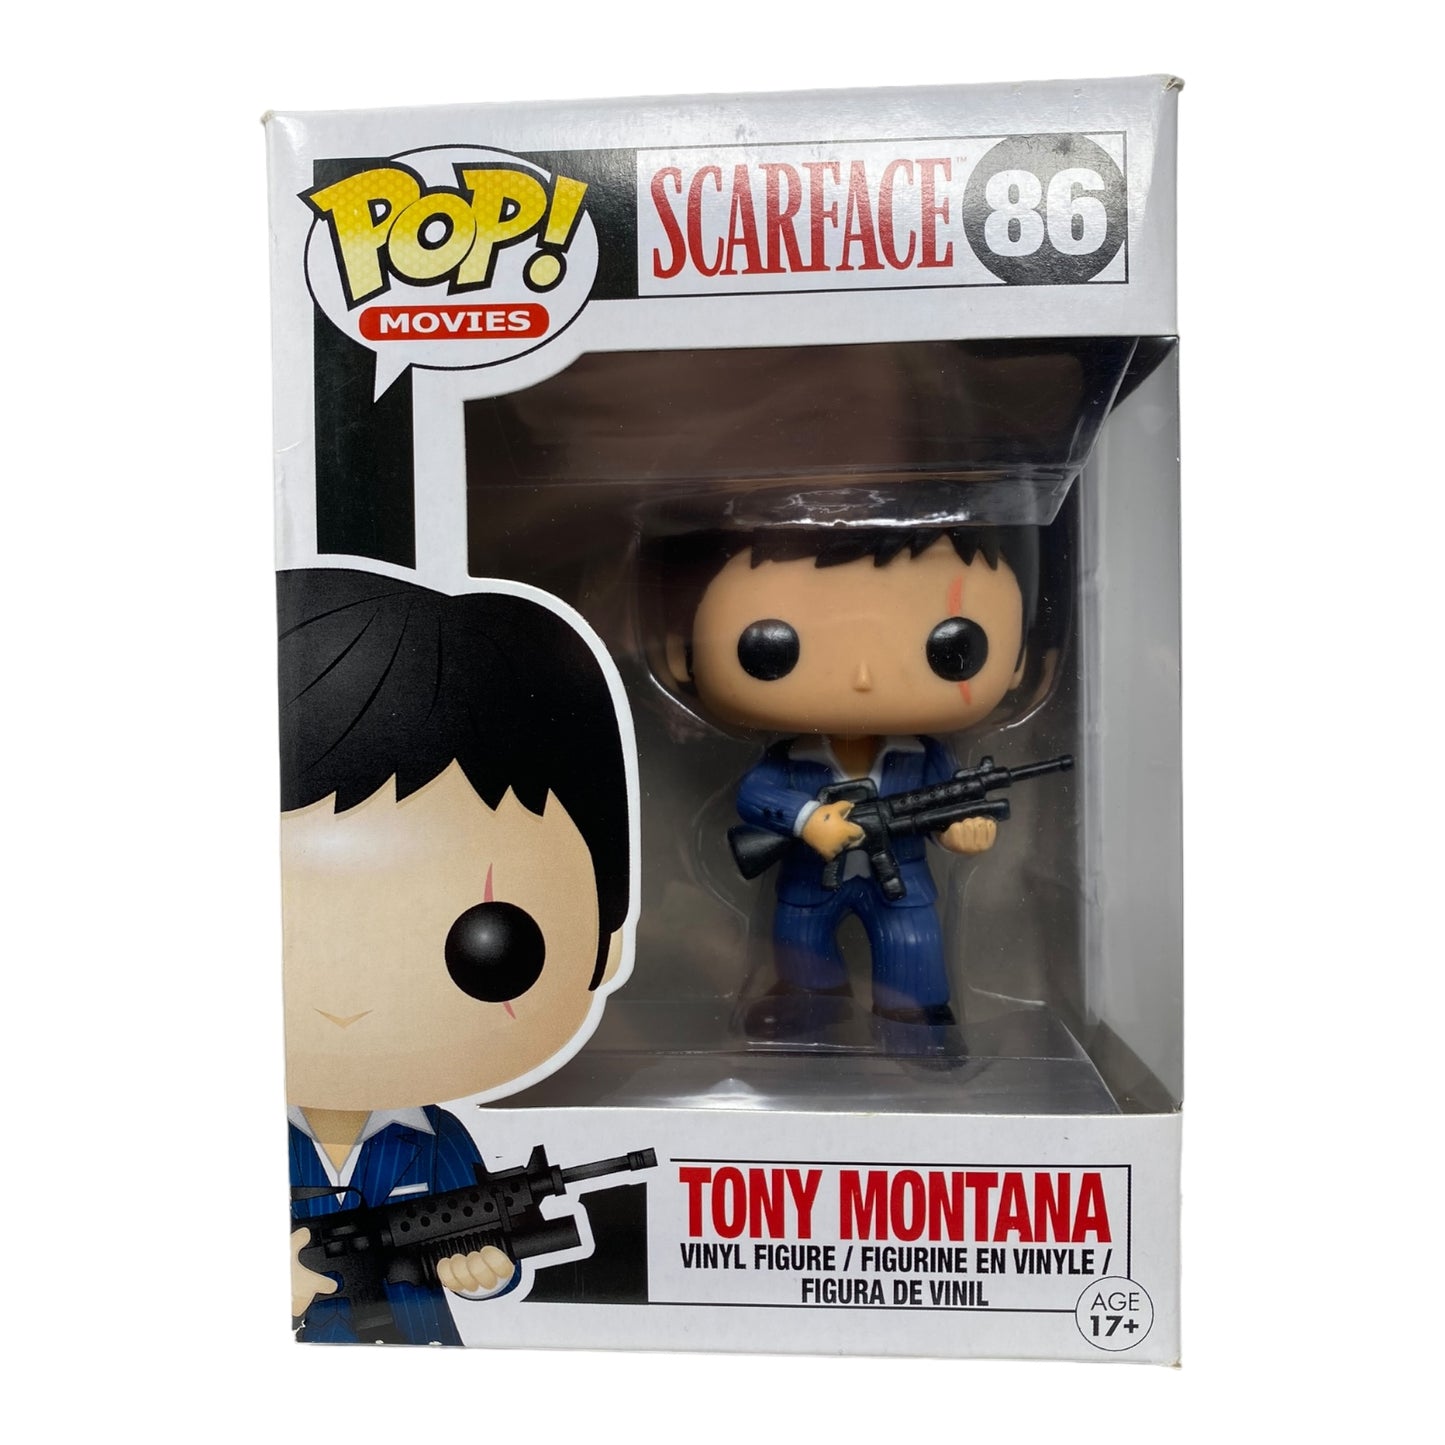 SOLD - 2013 - Tony Montana 86